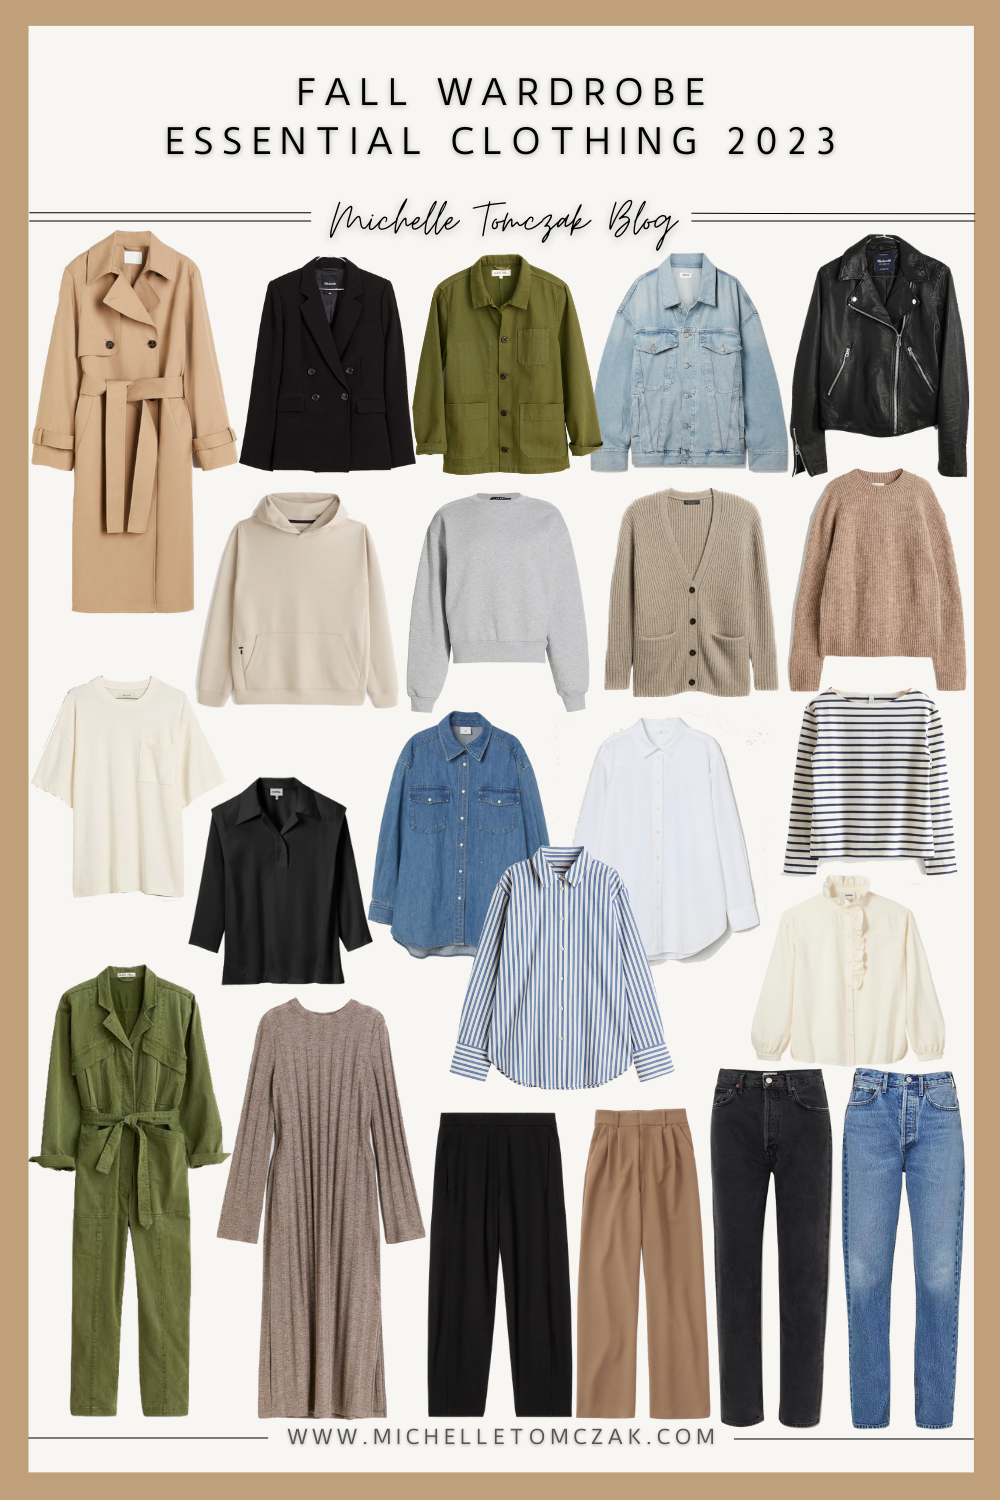 Fall Wardrobe Essentials + Statement Pieces 2023 - Michelle Tomczak